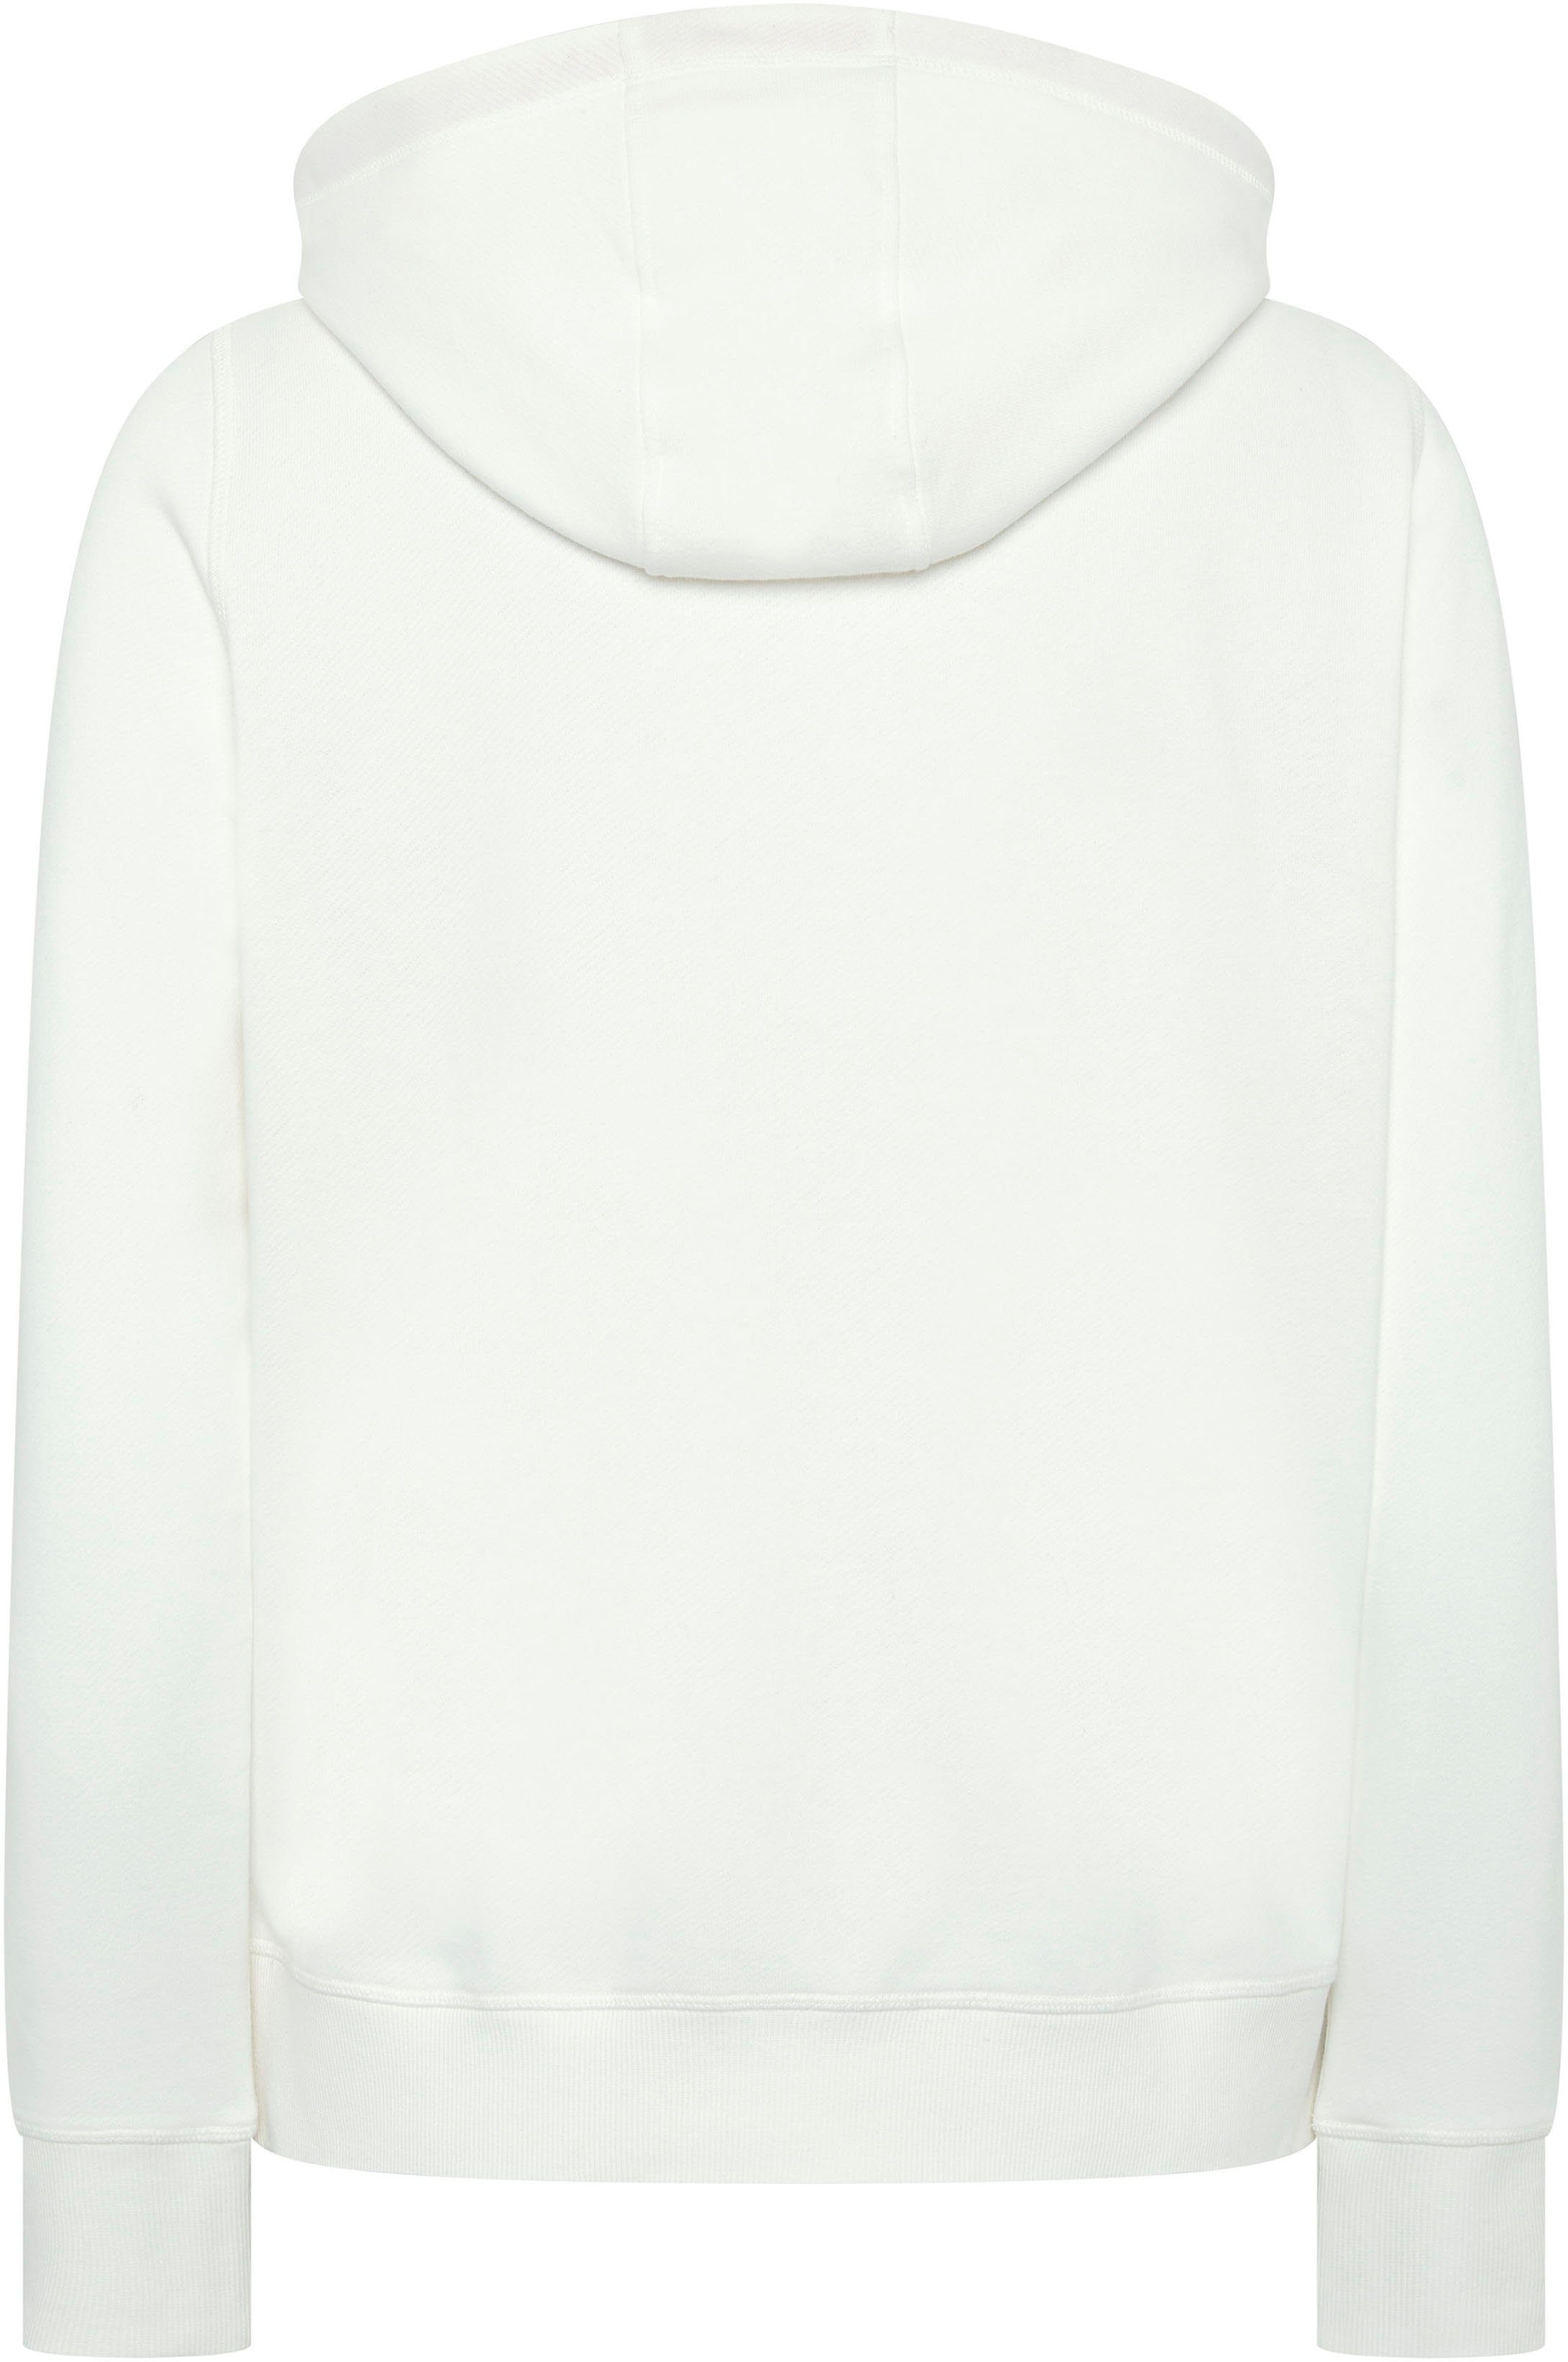 White Sweatshirt Chiemsee Star